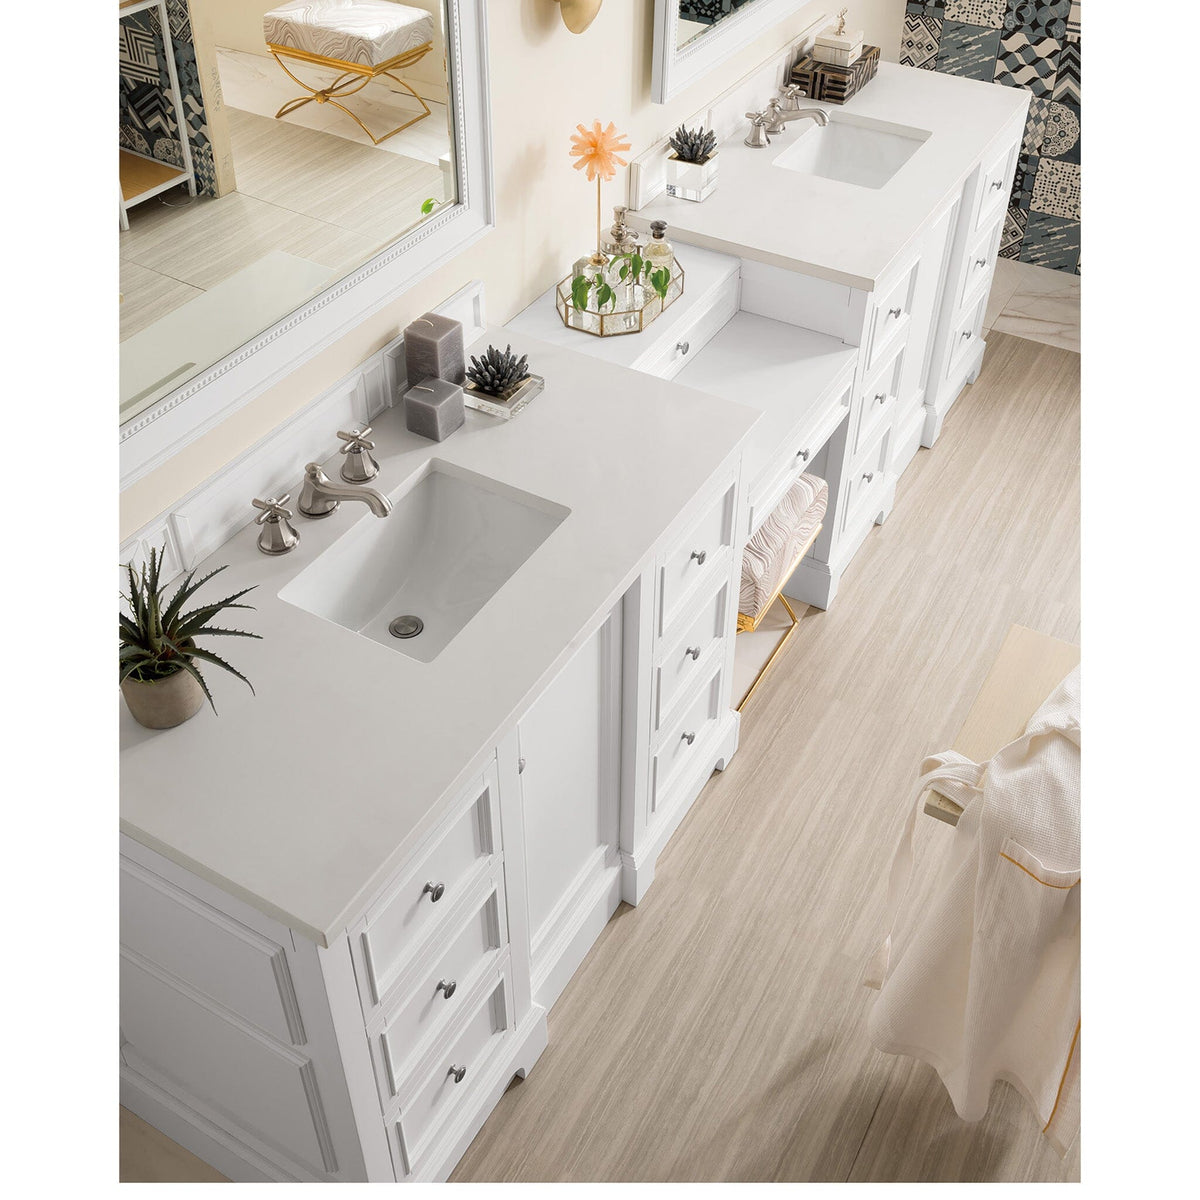 118" De Soto Double Bathroom Vanity with Makeup Counter, Bright White - vanitiesdepot.com